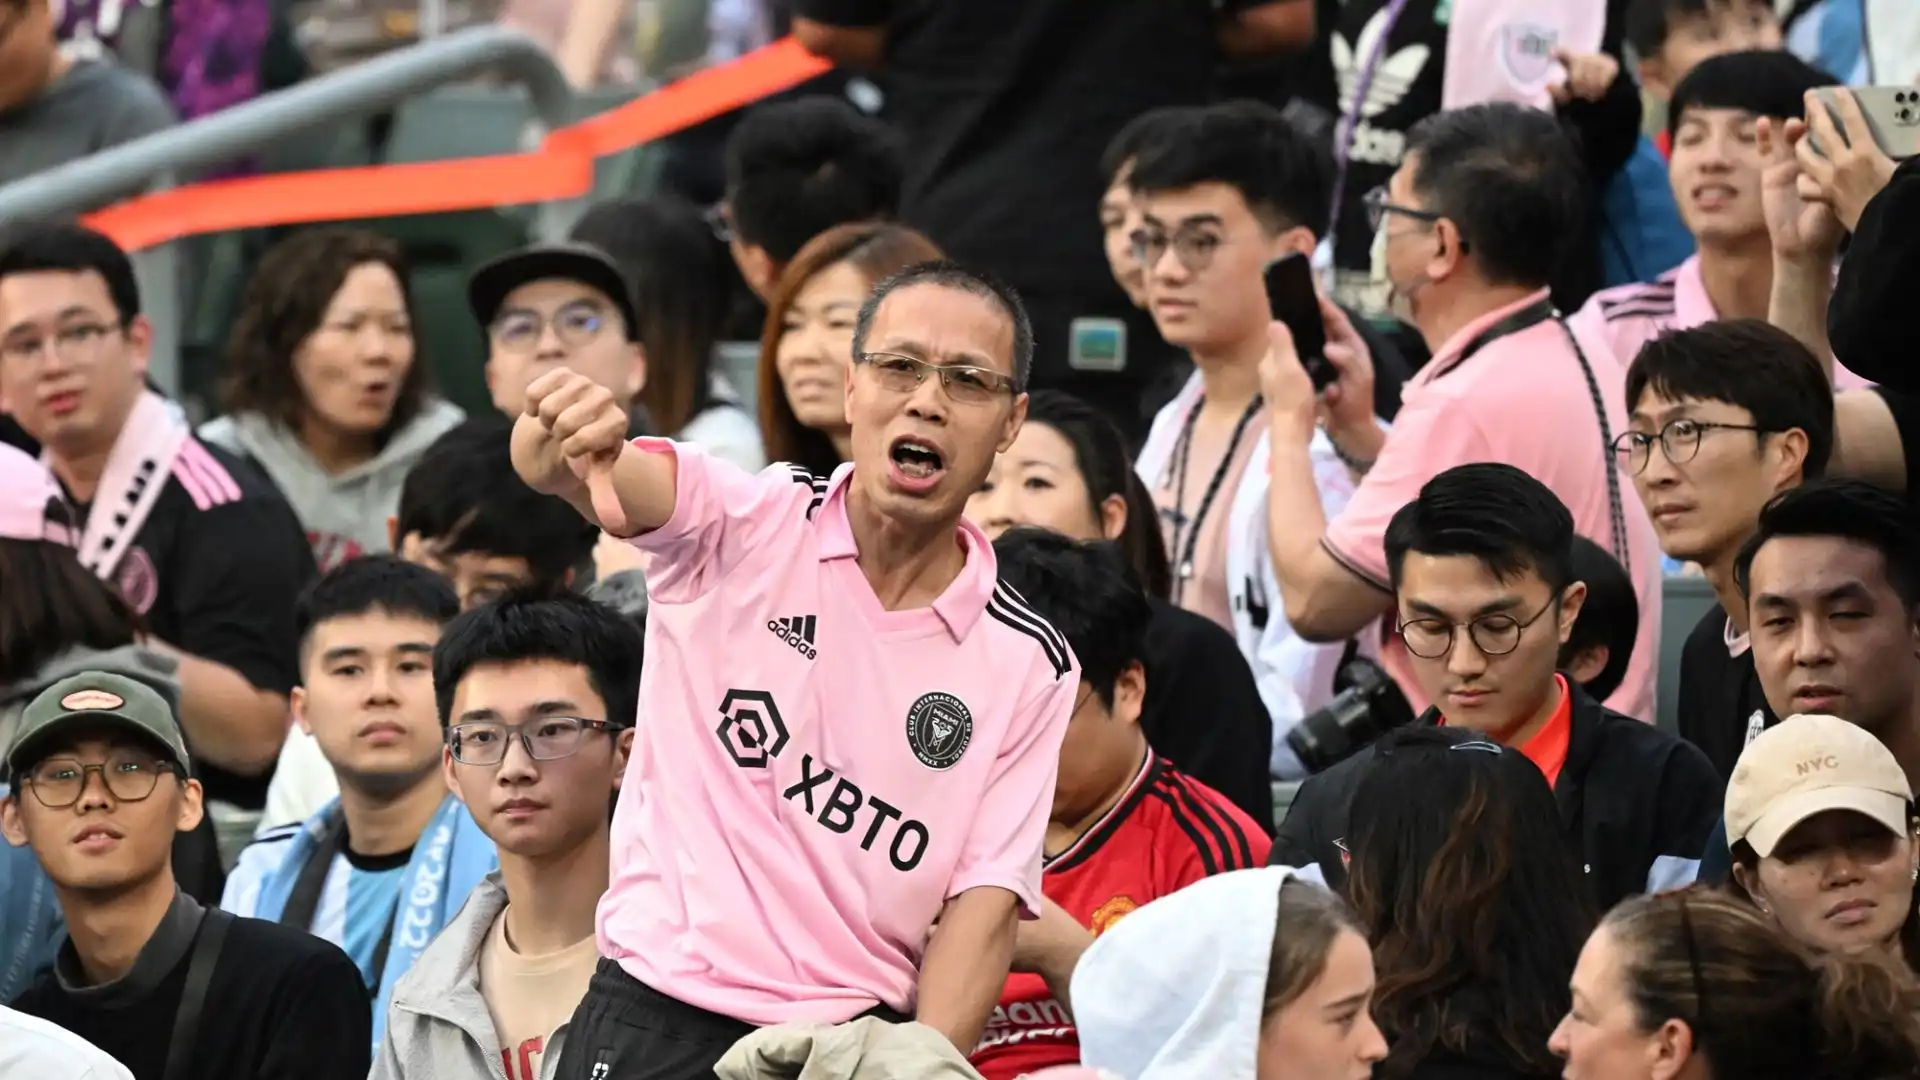 Si spera che non si ripetano le scene di rabbia viste ad Hong Kong, con fischi e cori contro l'Inter Miami e Messi